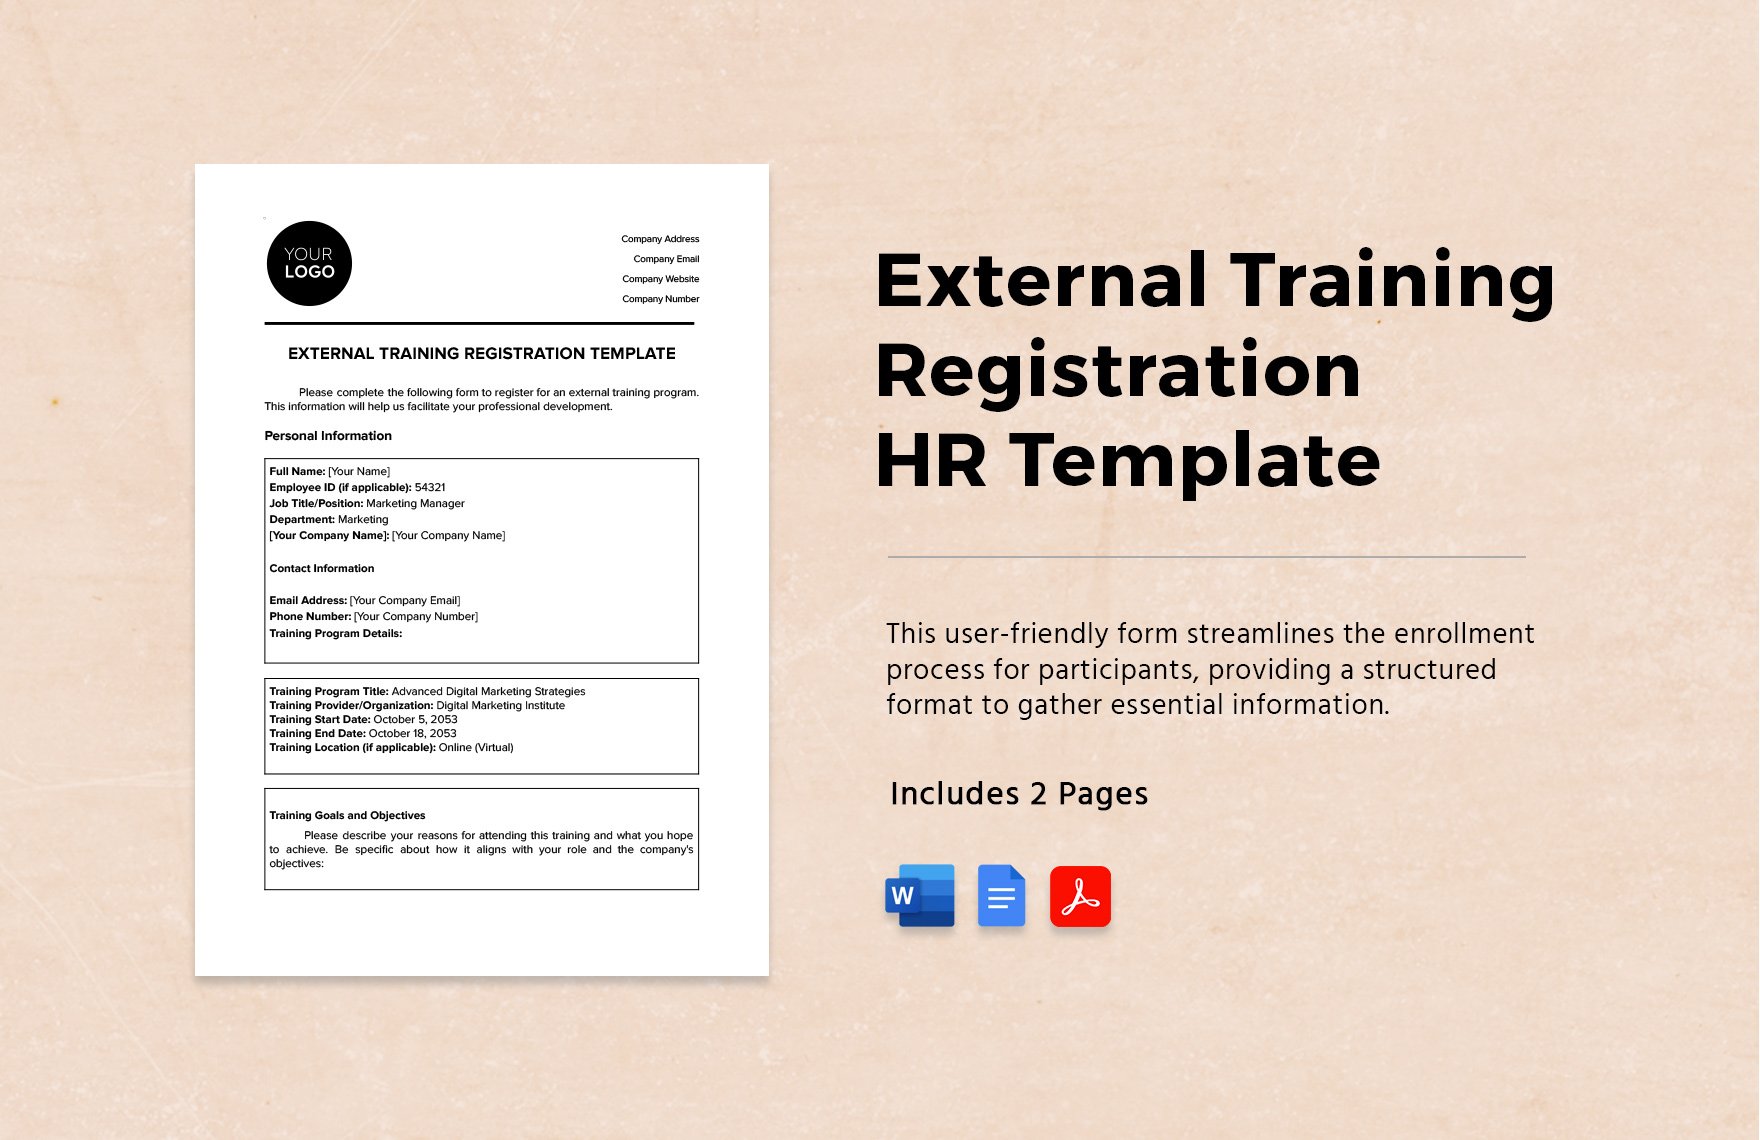 External Training Registration HR Template